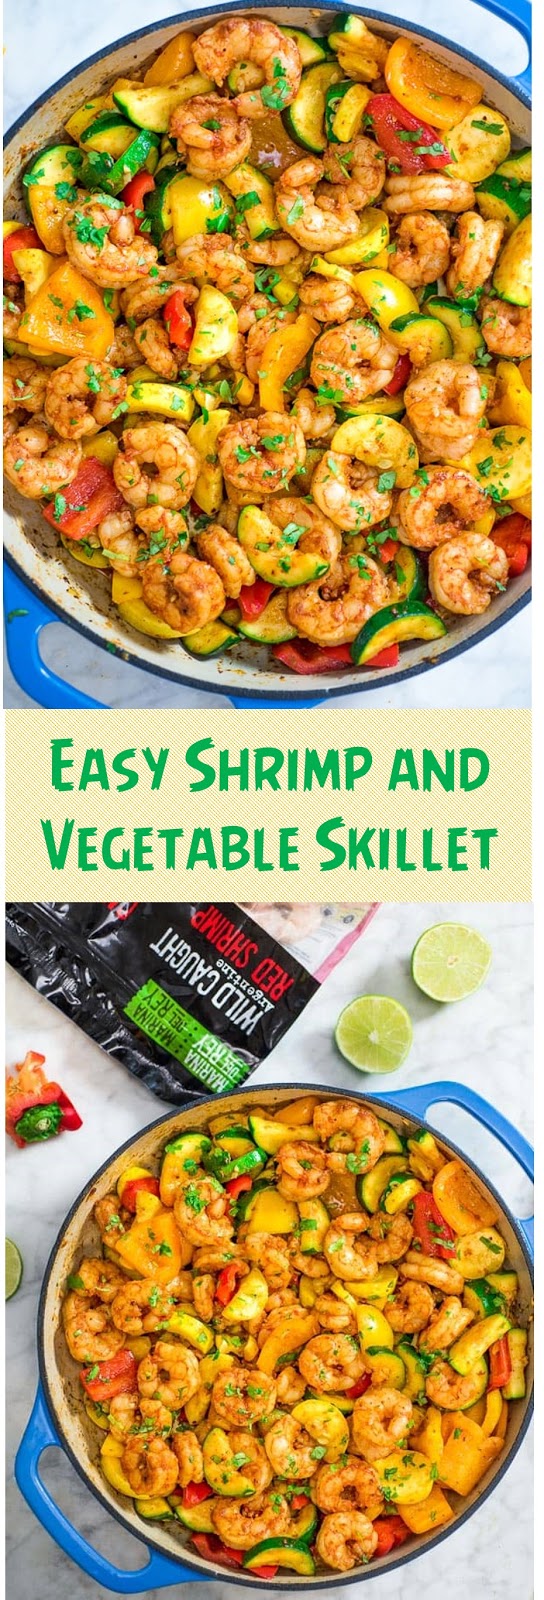 Easy Shrimp and Vegetable Skillet